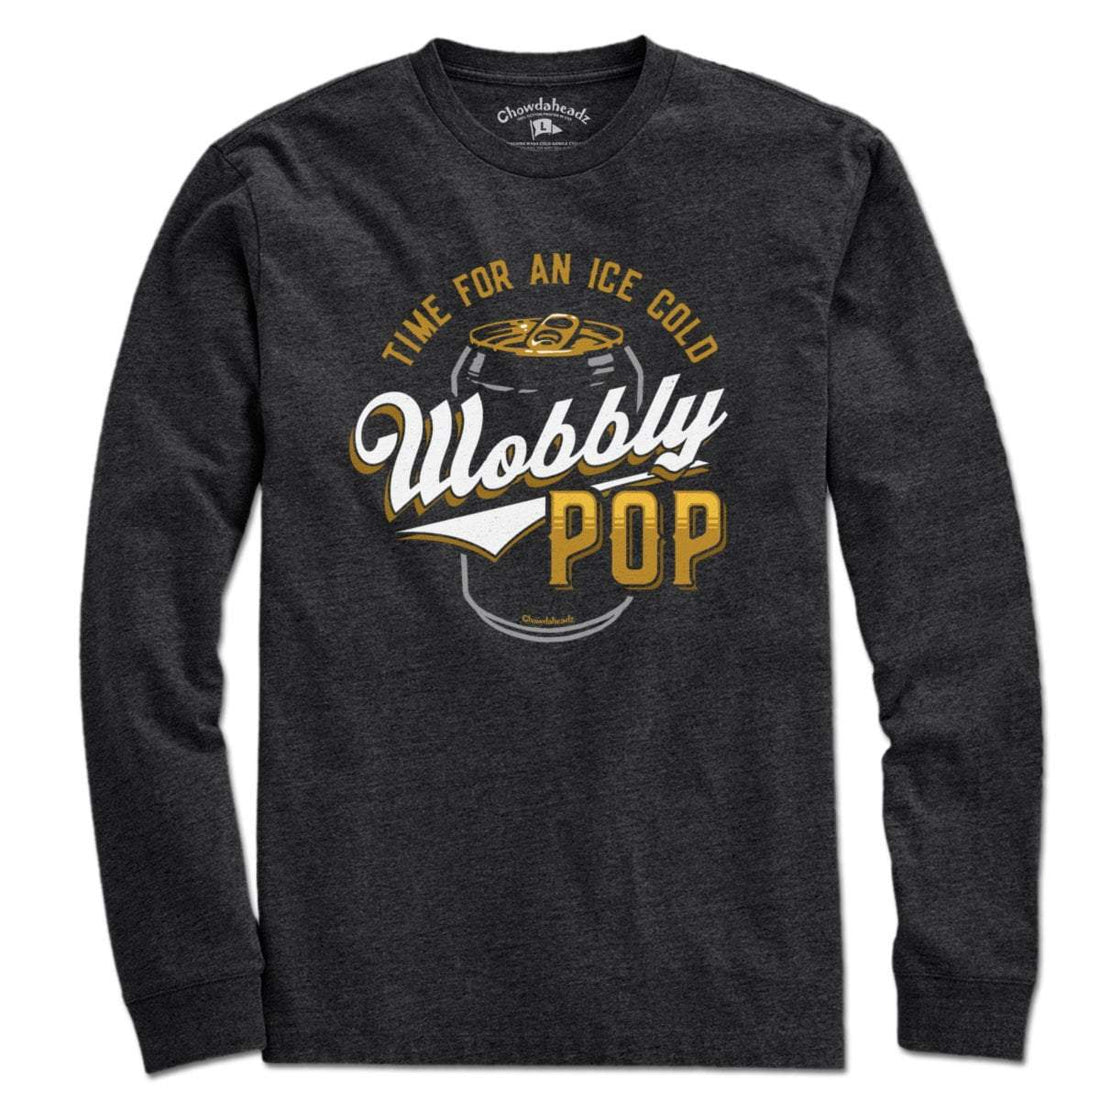 Wobbly Pop T-Shirt - Chowdaheadz